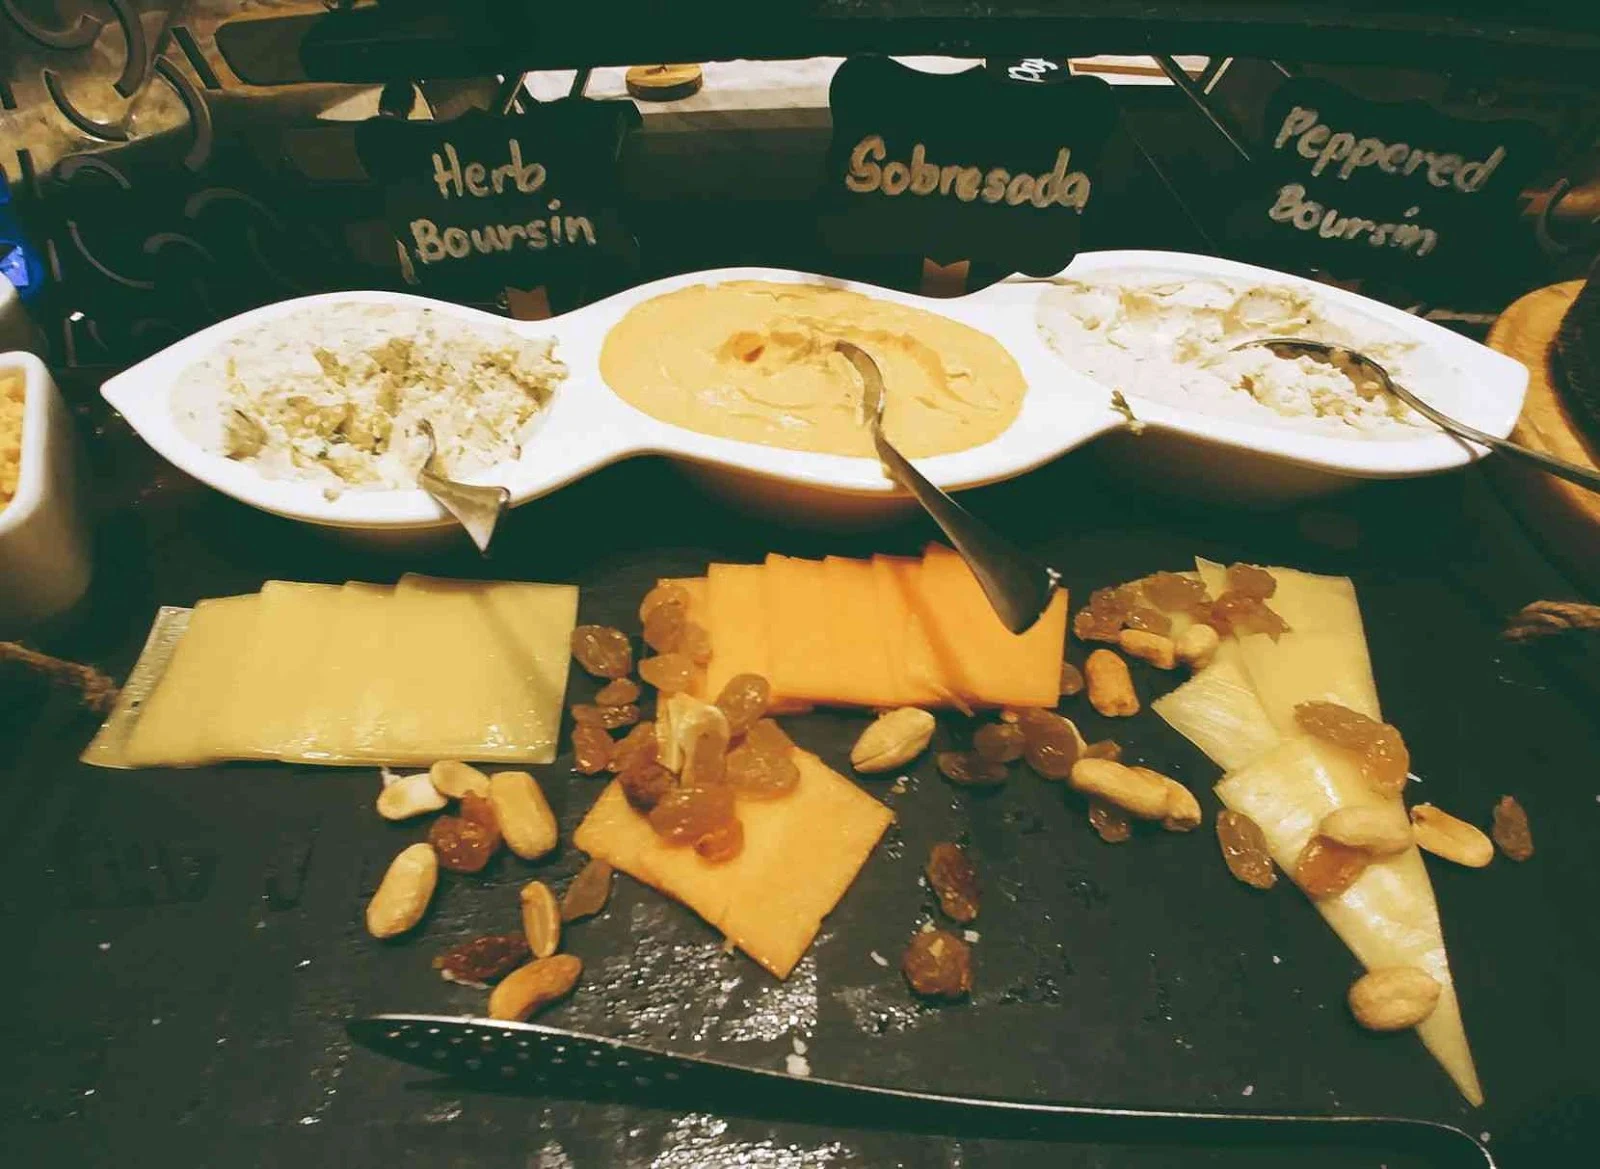 Vikings Luxury Buffet: cheese station